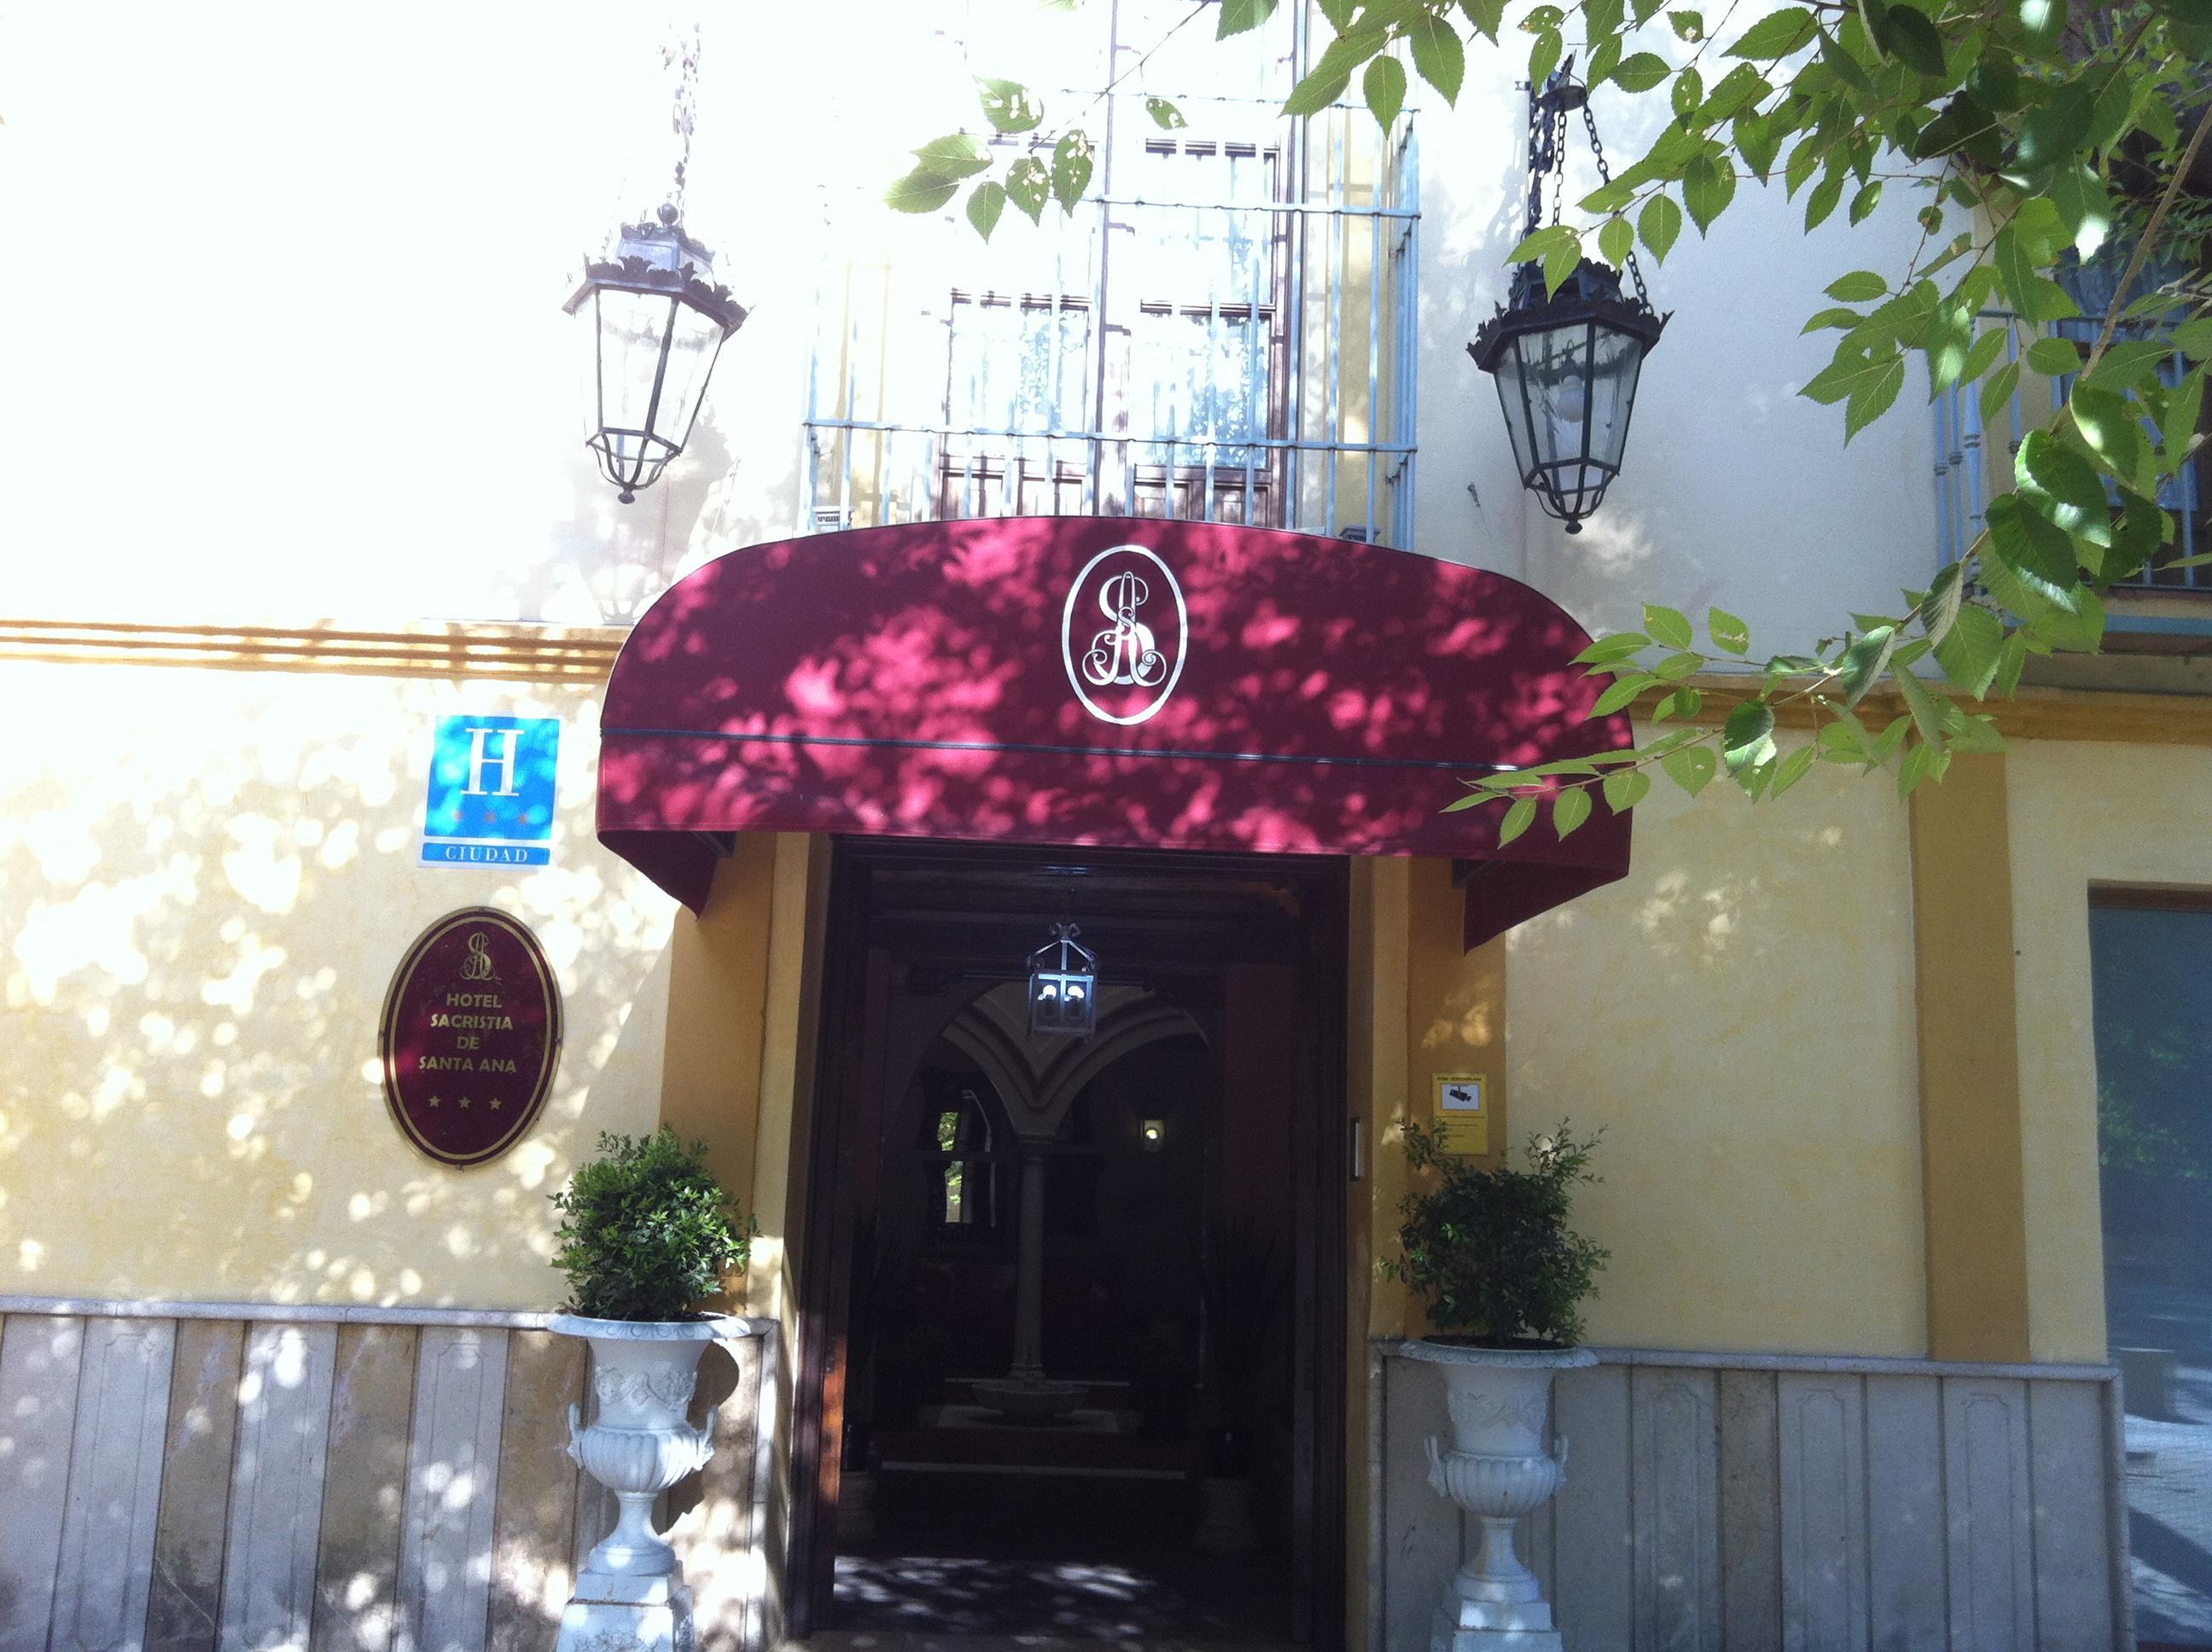 Sacristia De Santa Ana Hotel Sevilla Kültér fotó